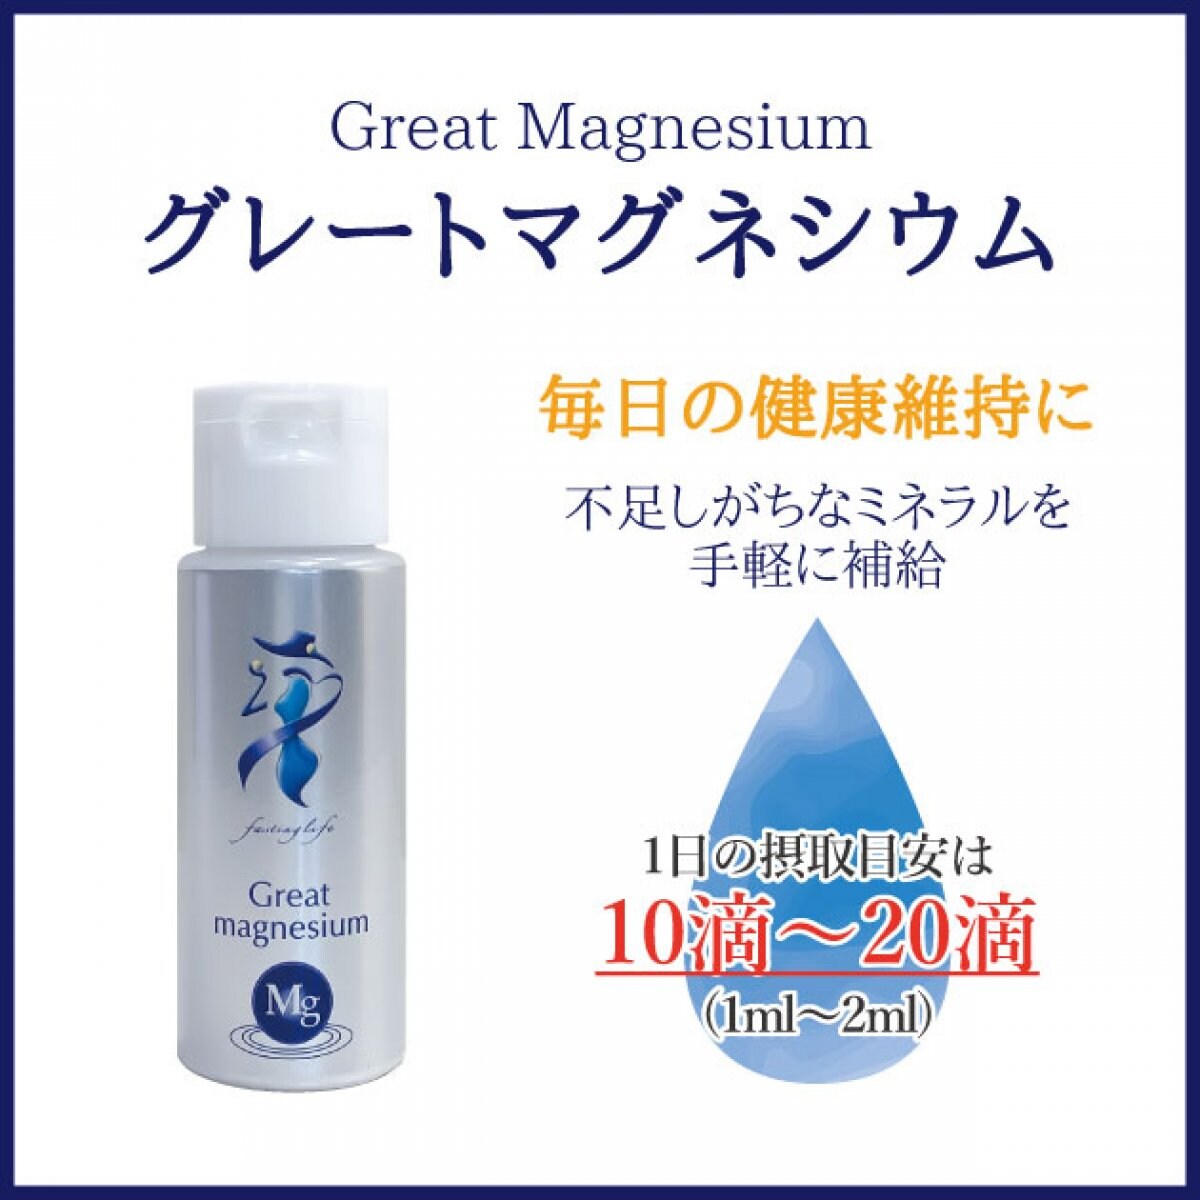 クラシック グレートマグネシウム 50ml × 2本 超高濃度マグネシウム ミネラル サプリメント マグネシウム 栄養補給 Great  magnesium ファスティング